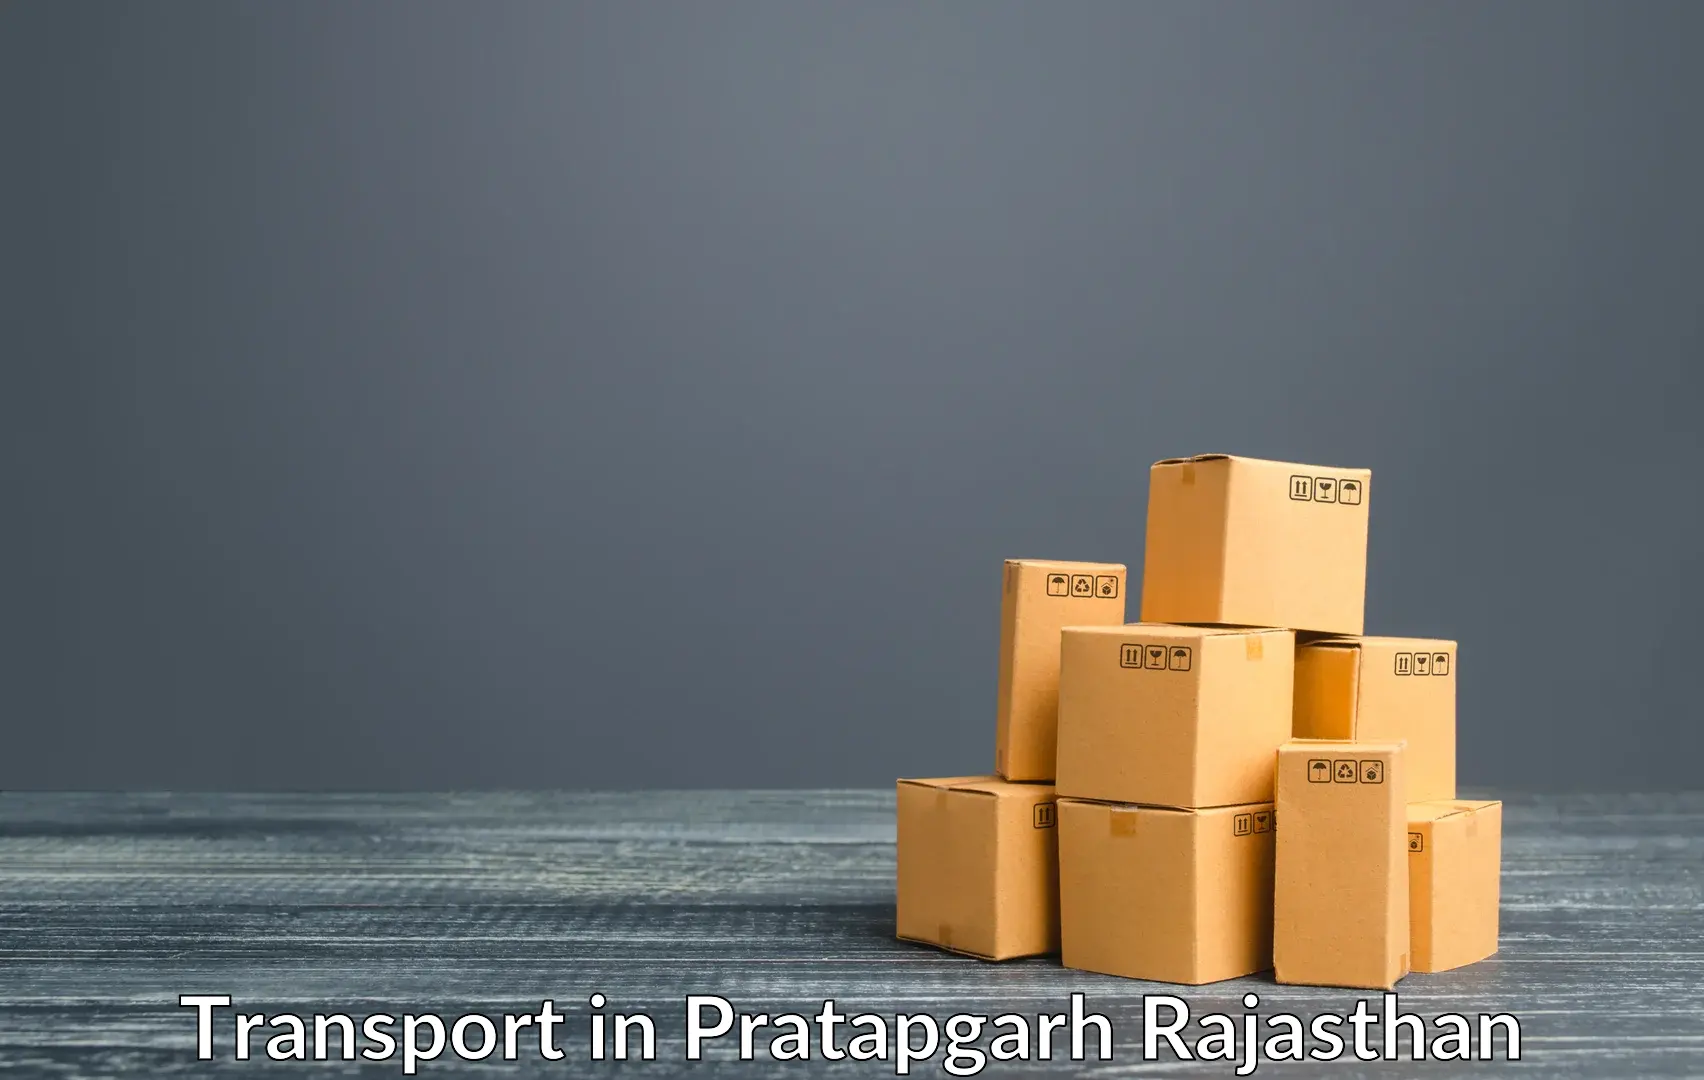 Two wheeler transport services in Pratapgarh Rajasthan